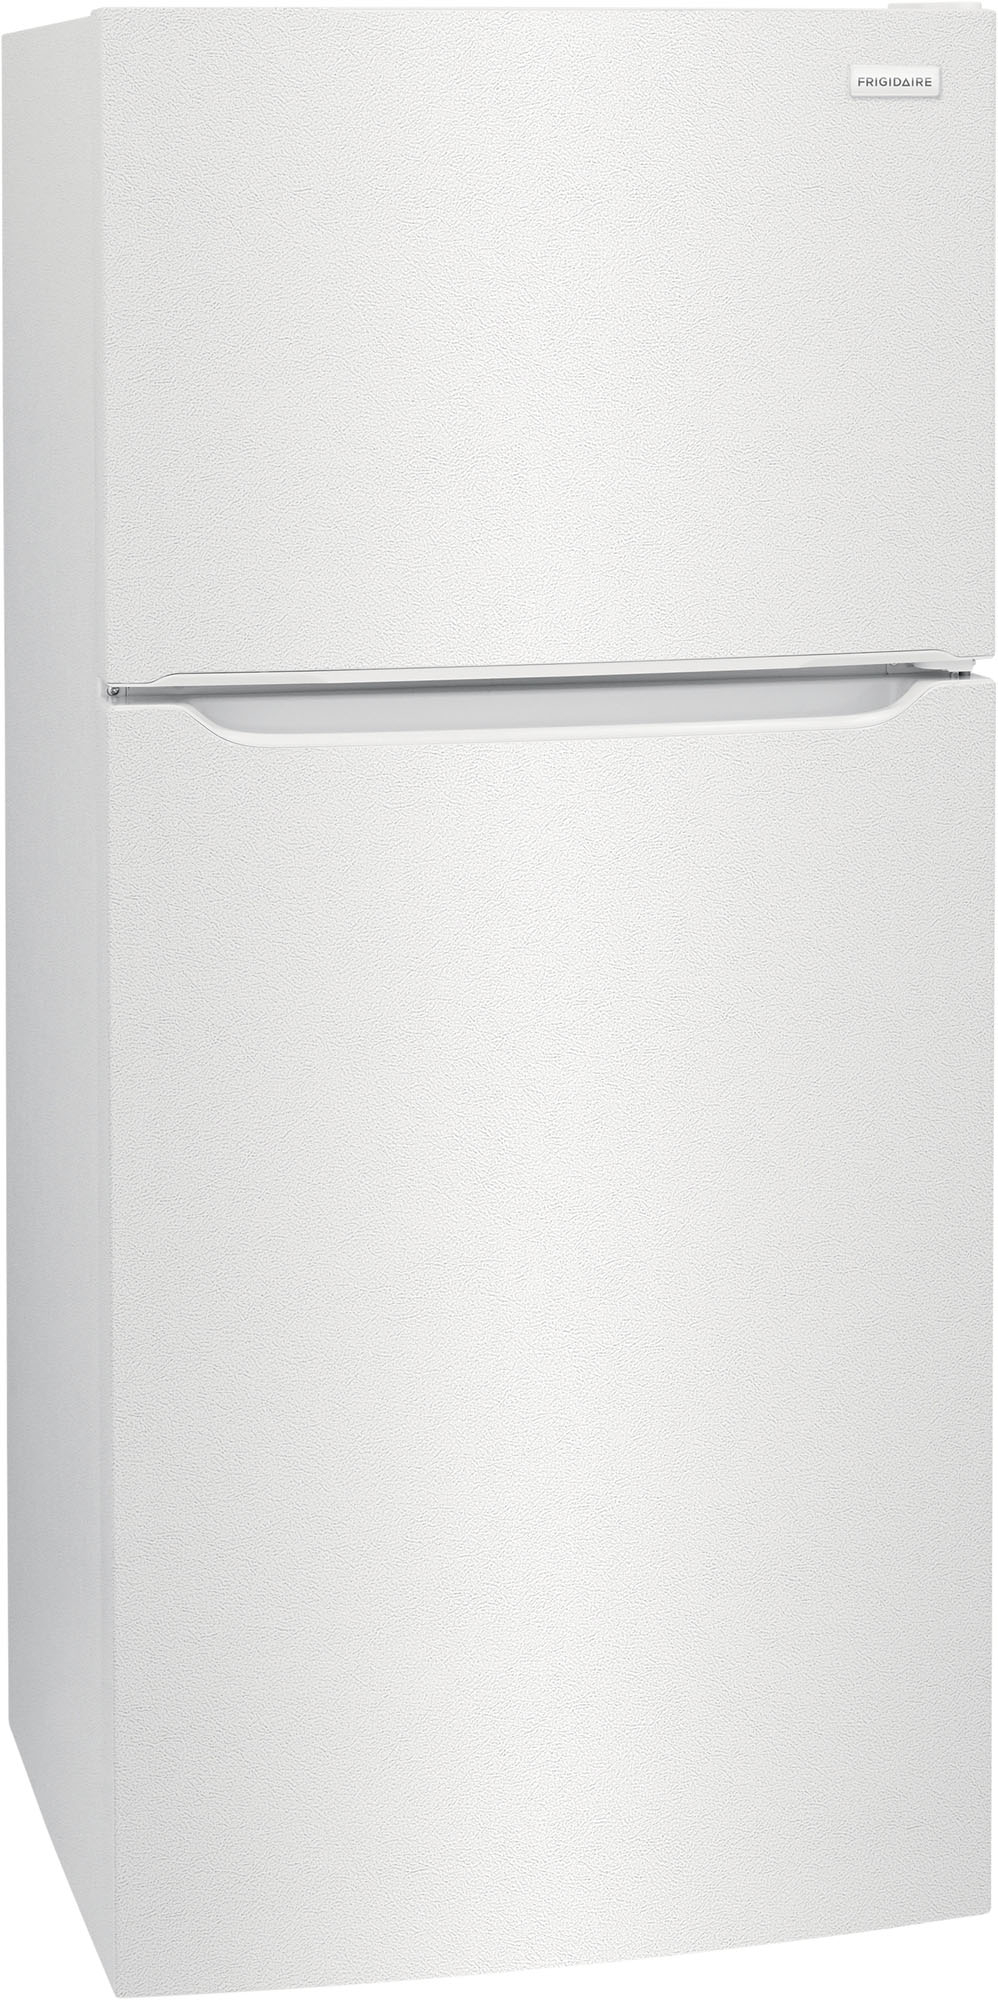 Angle View: Frigidaire - 18.3 Cu. Ft. Top Freezer Refrigerator